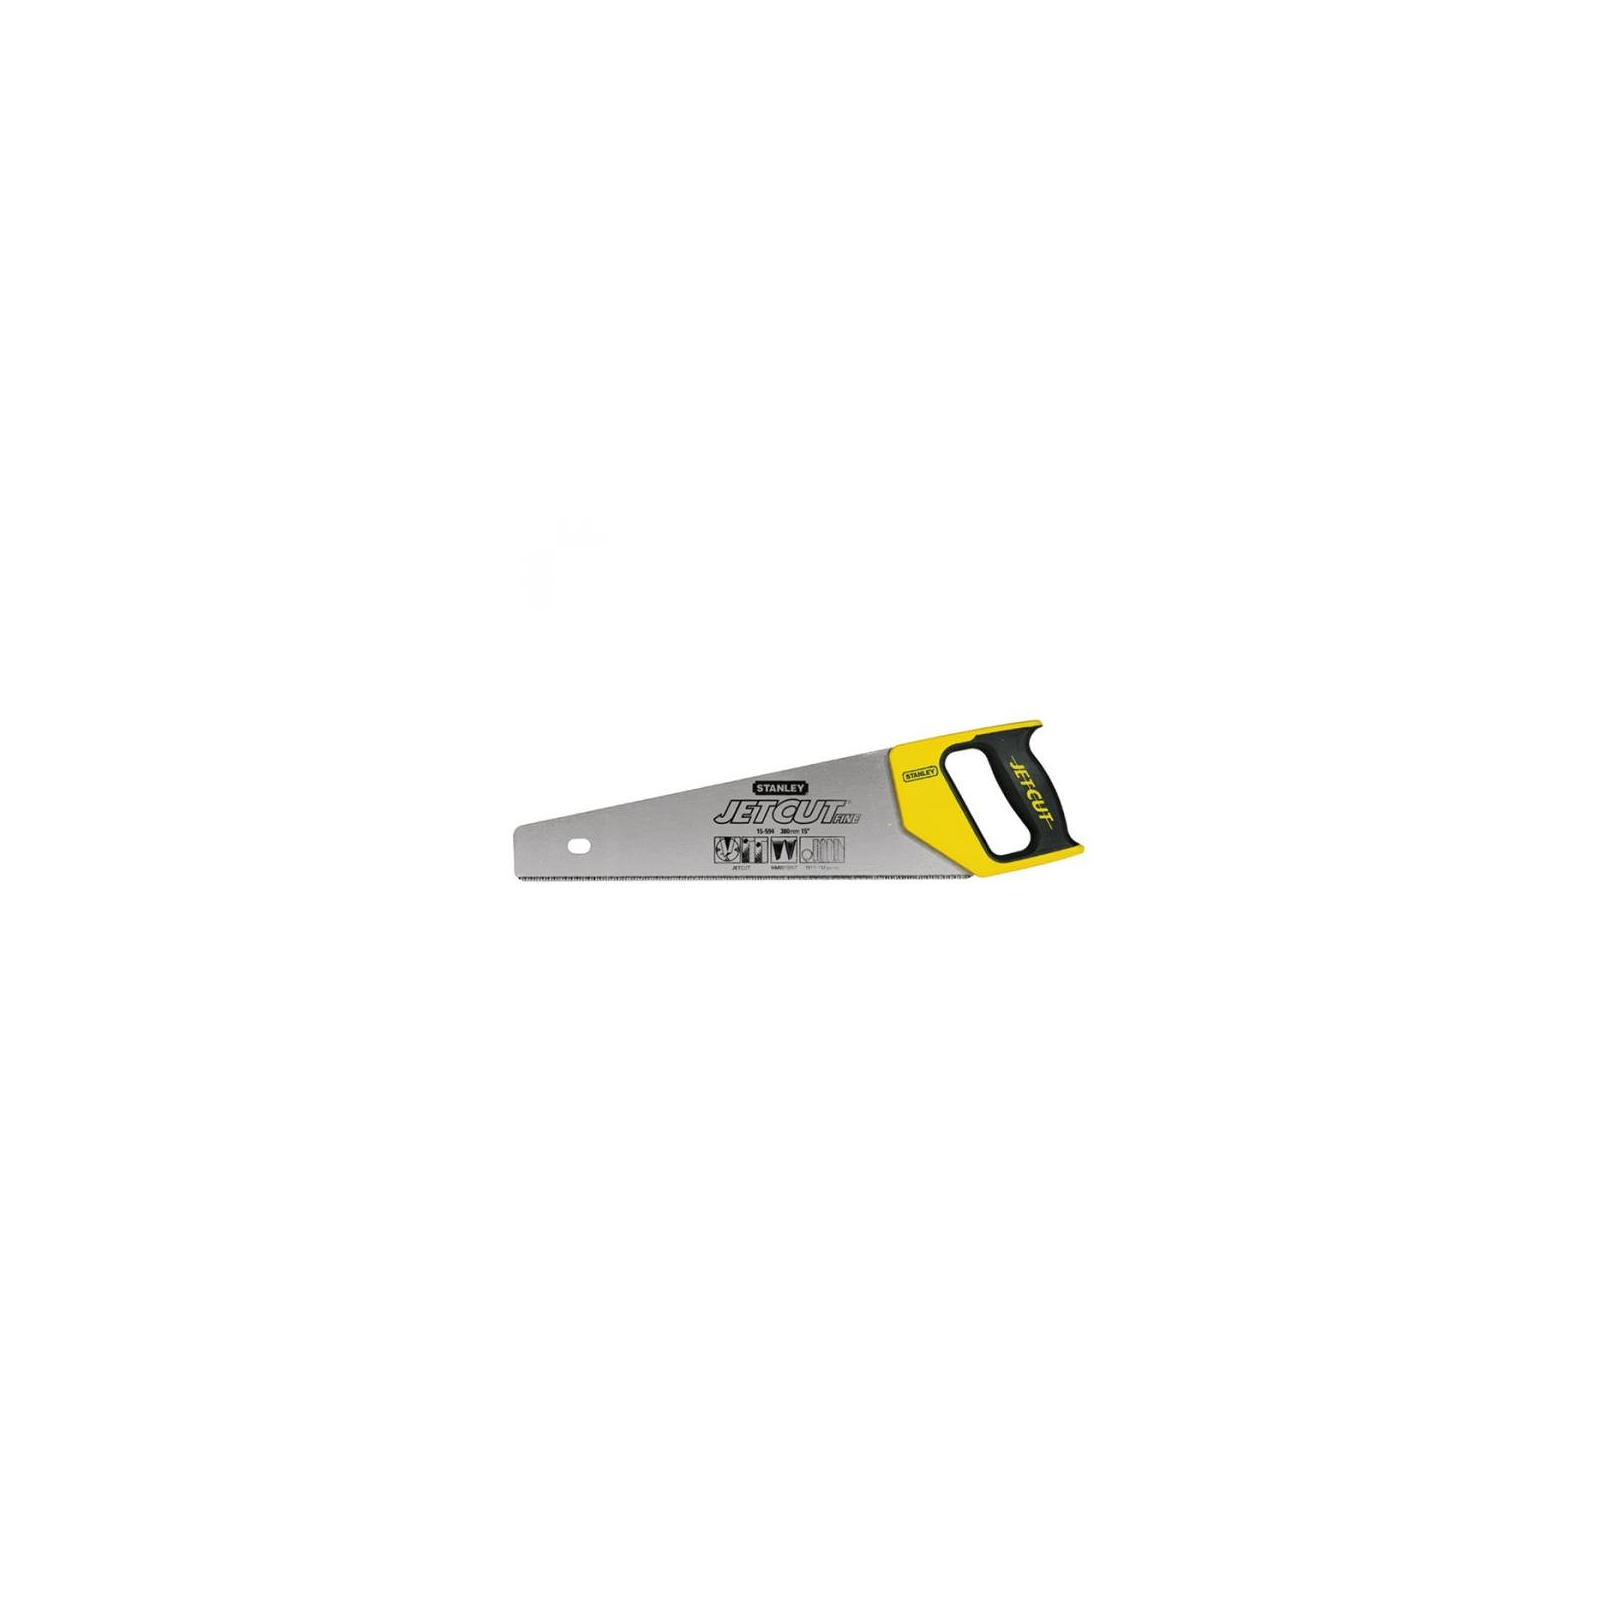 Ножівка Stanley Jet-Cut Fine 11 зубьев на дюйм, длина 500мм. (2-15-599)